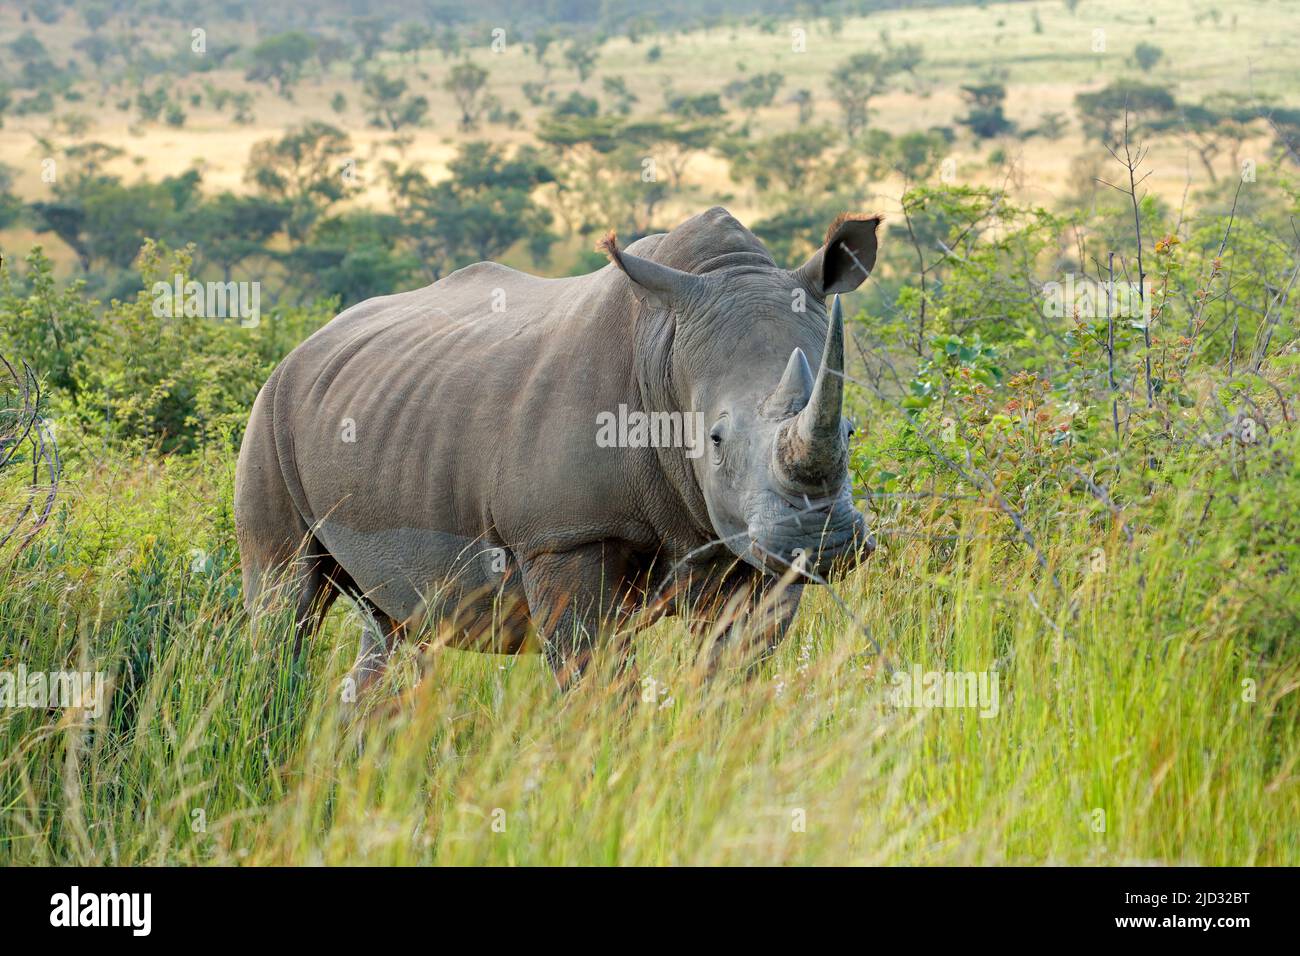 Endangered white rhinoceros (Ceratotherium simum) in natural habitat, South Africa Stock Photo